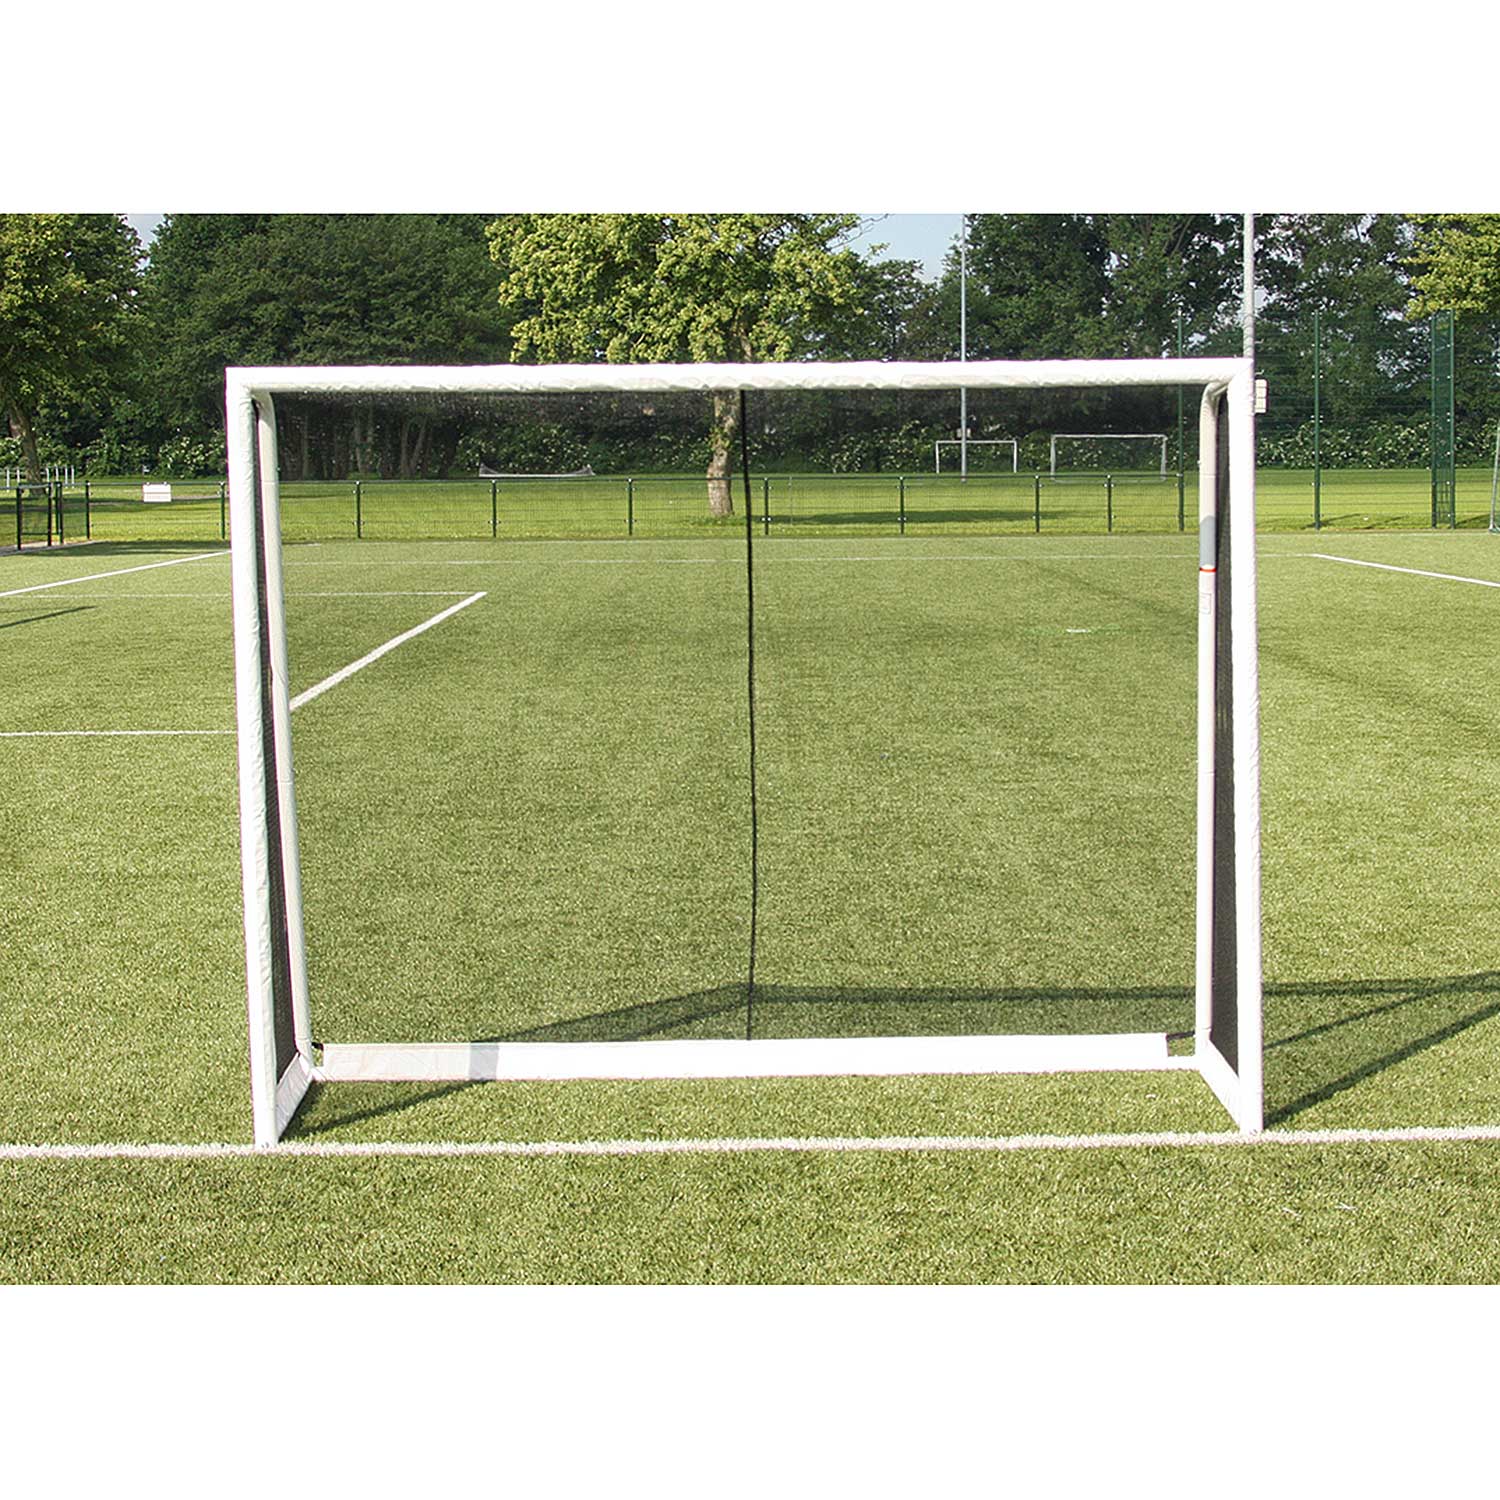 Soccer goal Buffalo World Cup (225x175x80cm)